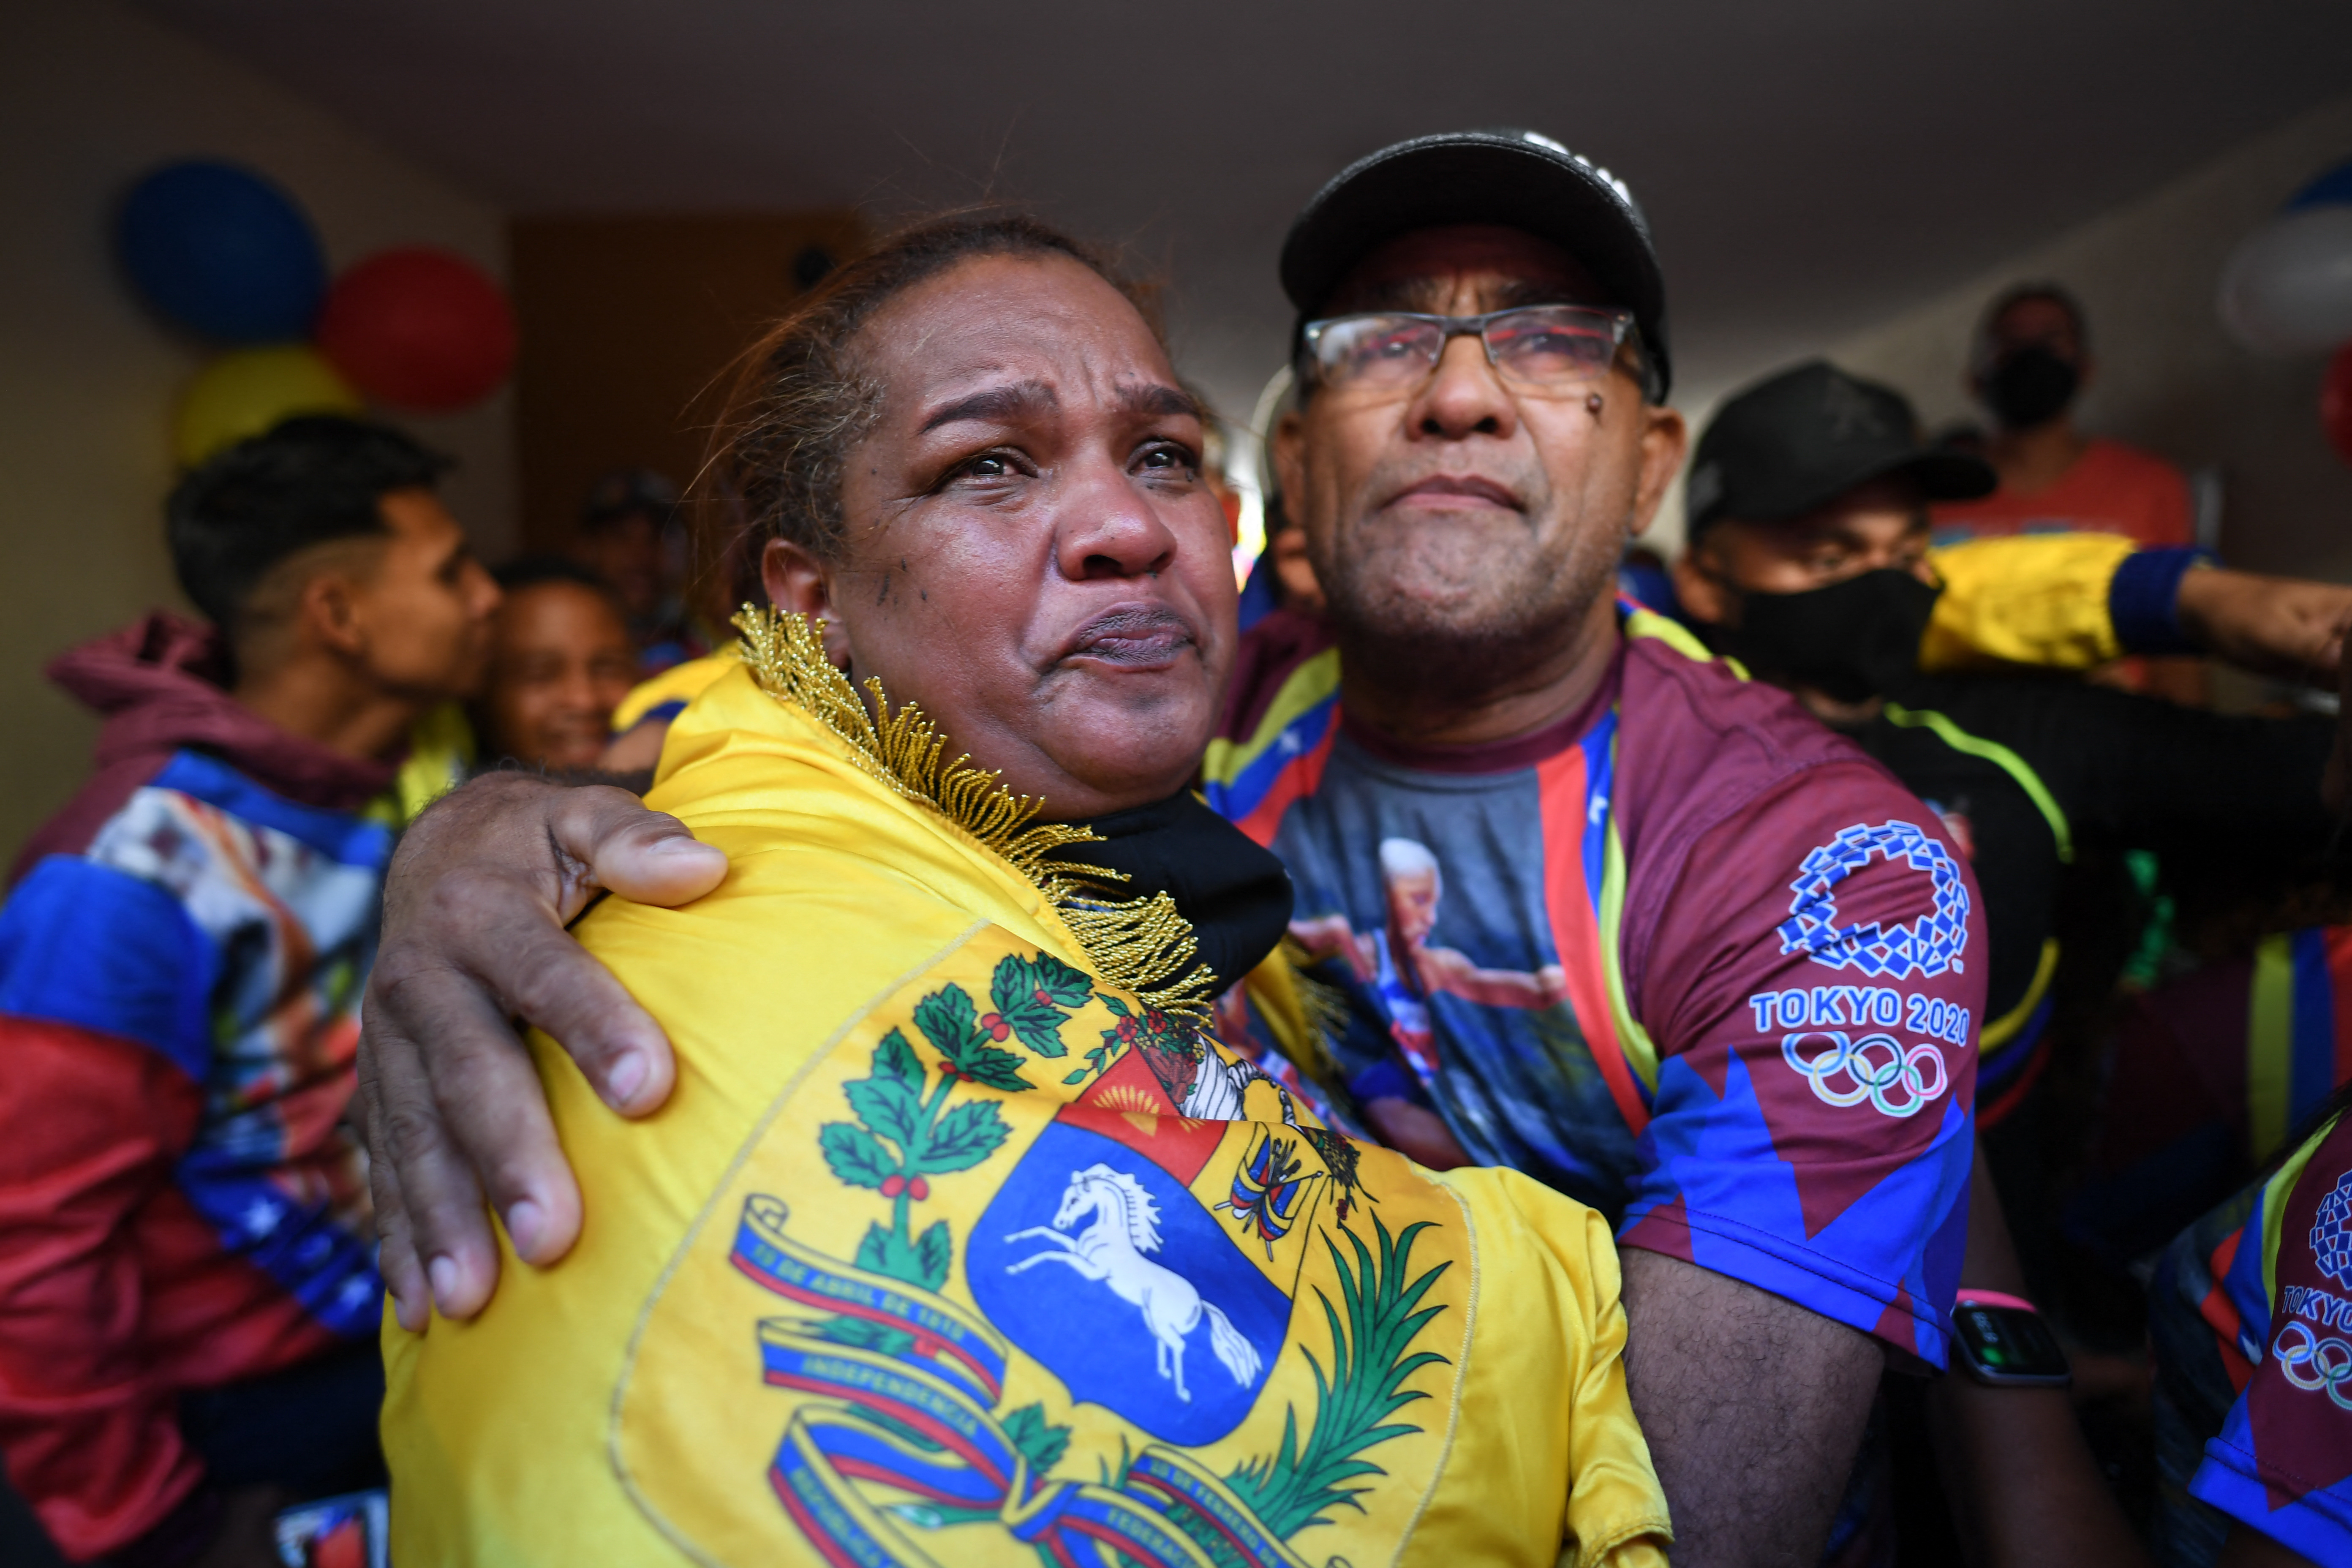 EN FOTOS: Entre lágrimas junto a familiares y amigos la madre de Yulimar Rojas festejó la medalla olímpica - LaPatilla.com